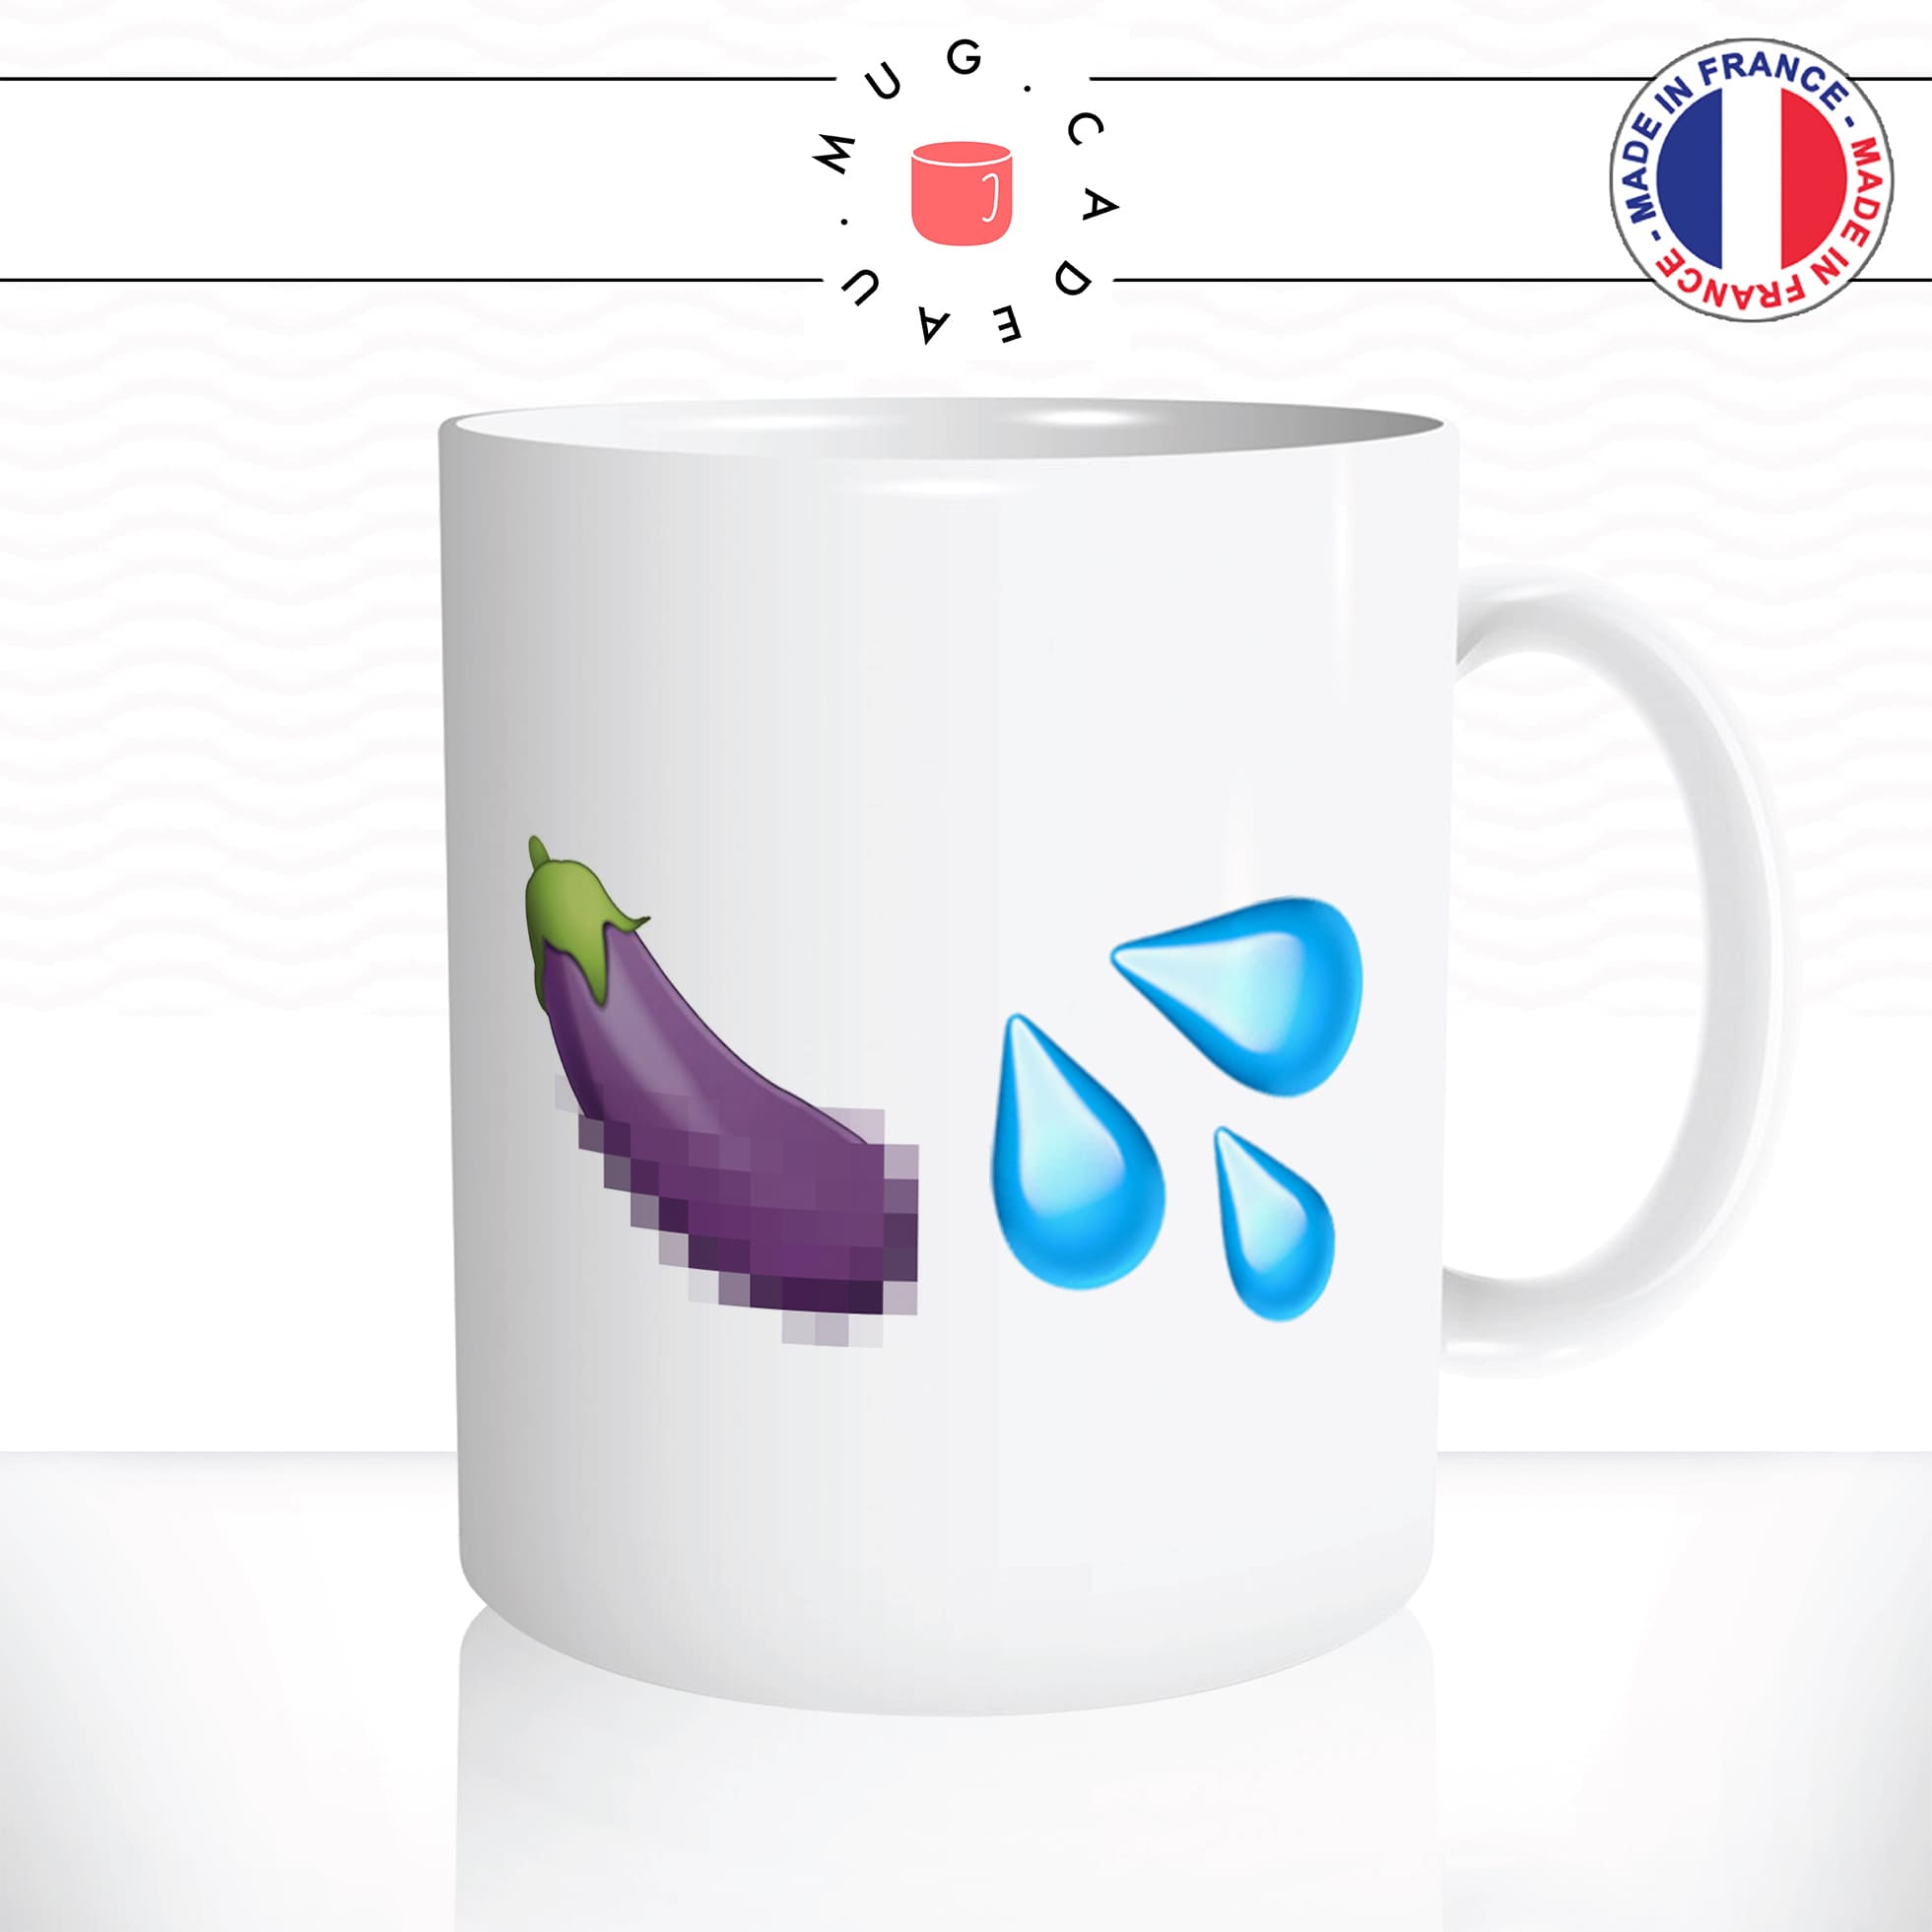 mug-tasse-blanc-brillant-aubergine-floutée-sex-dessin-gouttes-sexto-legumes-humour-sms-idée-cadeau-originale-fun-sexy-unique-personnalisable2